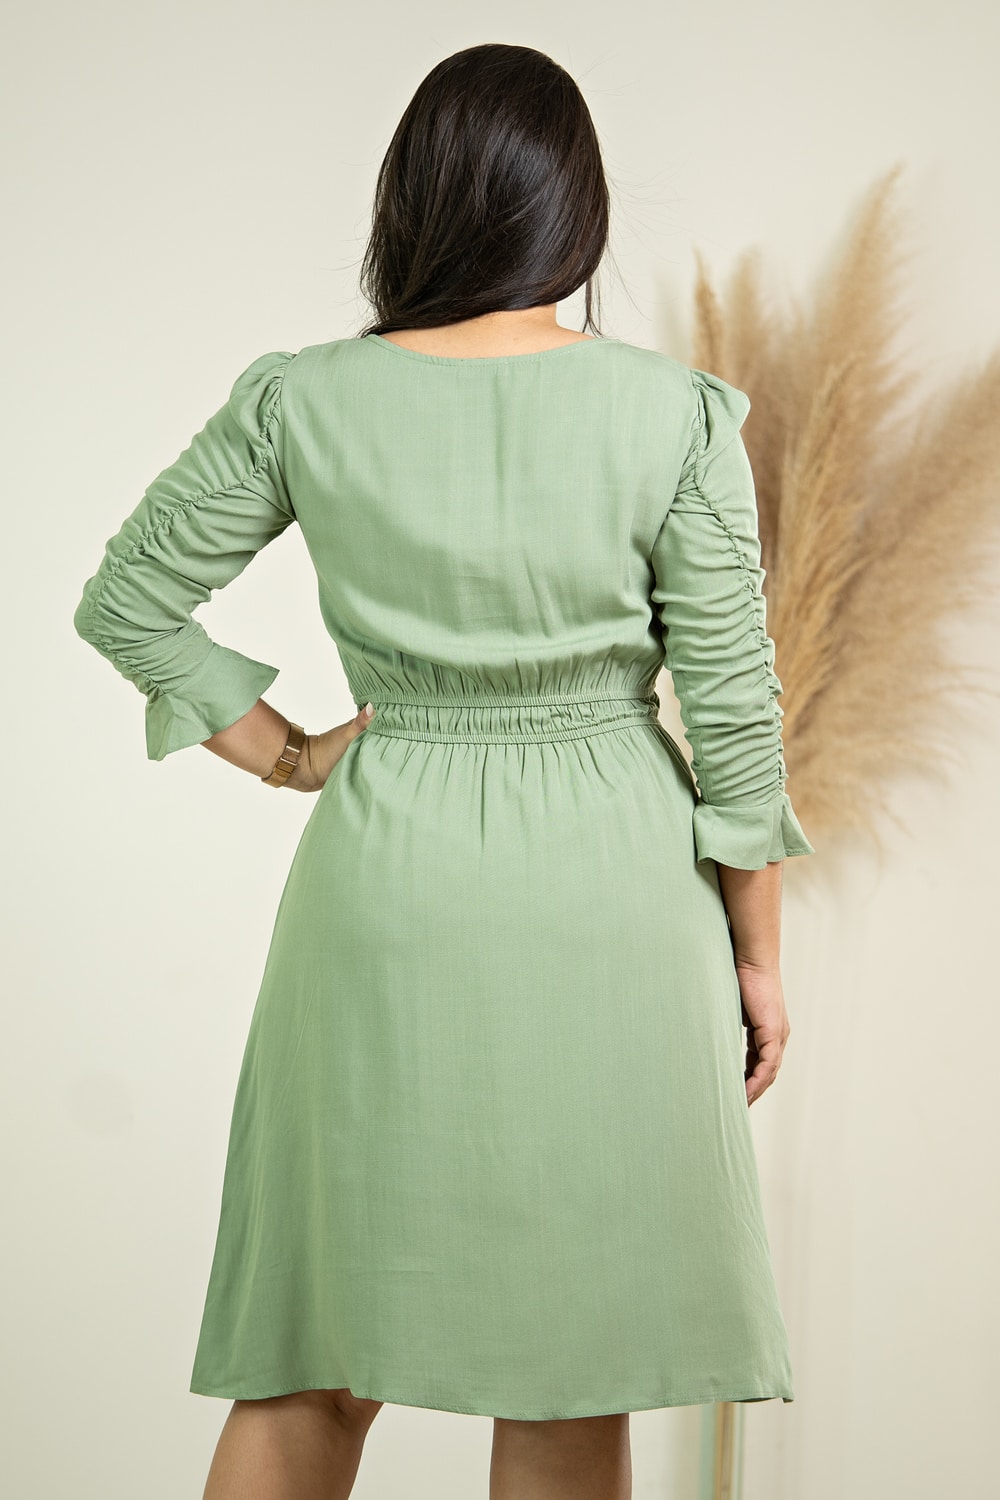 Vestido Olívia | Moda Evangélica